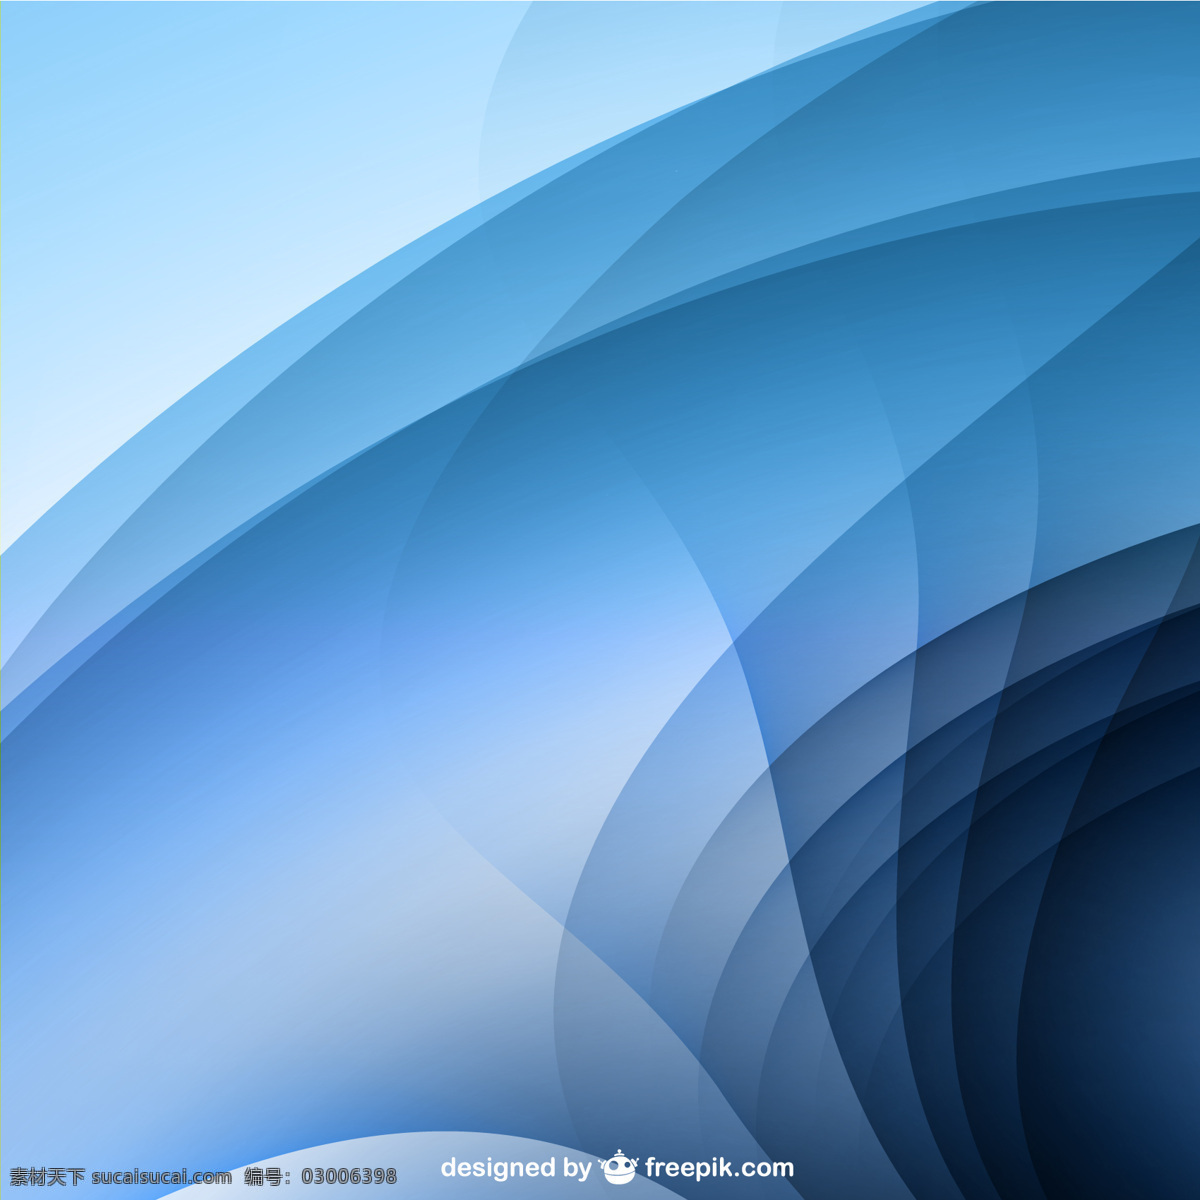 波形背景 背景 抽象 几何 模板 波动 蓝色背景 蓝色 壁纸 布局 几何背景 形状 插图 曲线 抽象设计